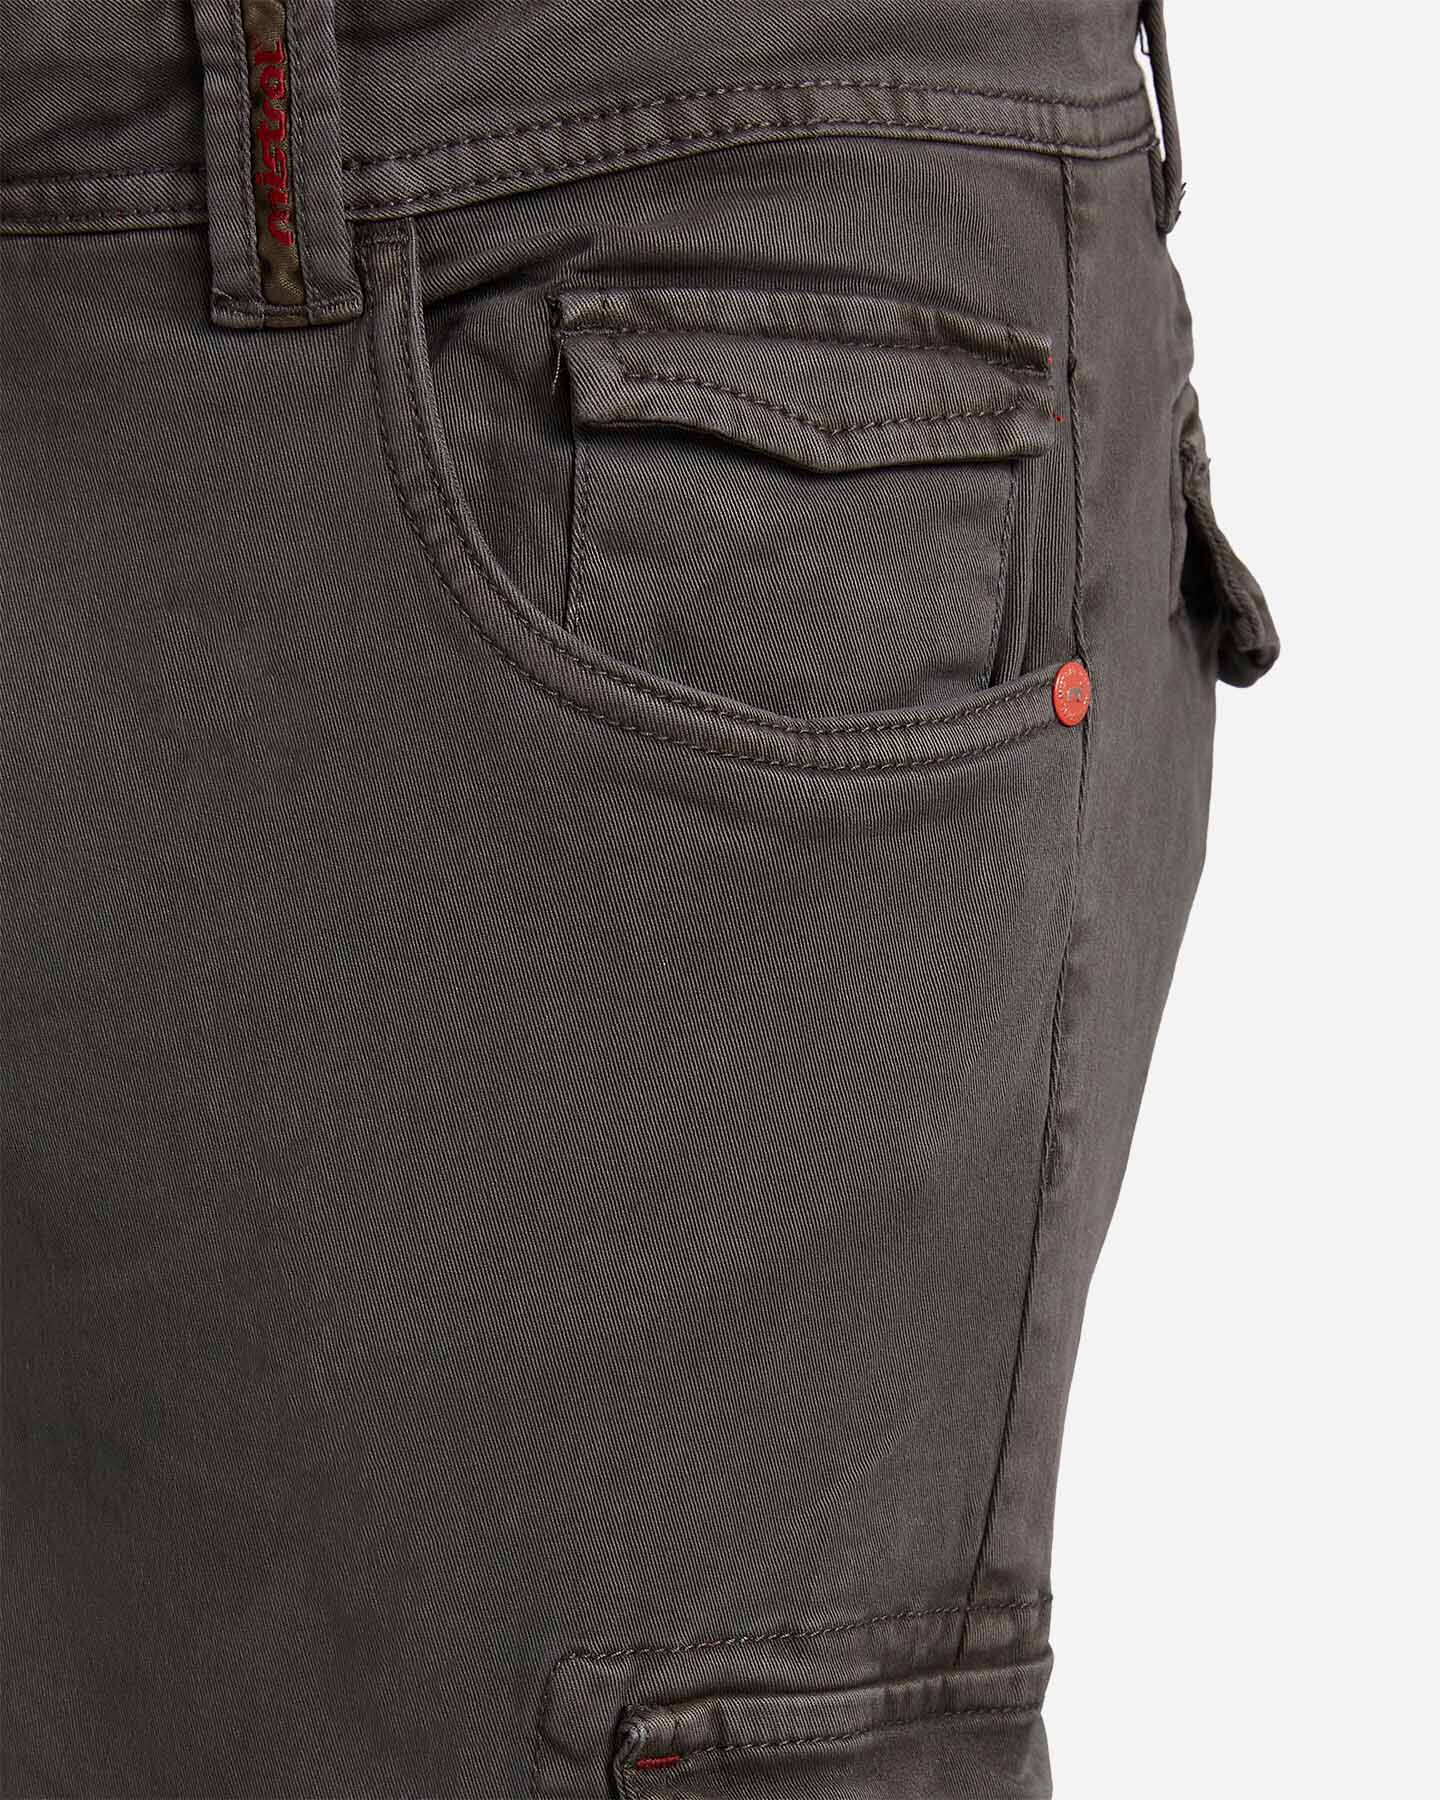  Pantalone MISTRAL SLIM TASCONATO M S4079636|910|44 scatto 3